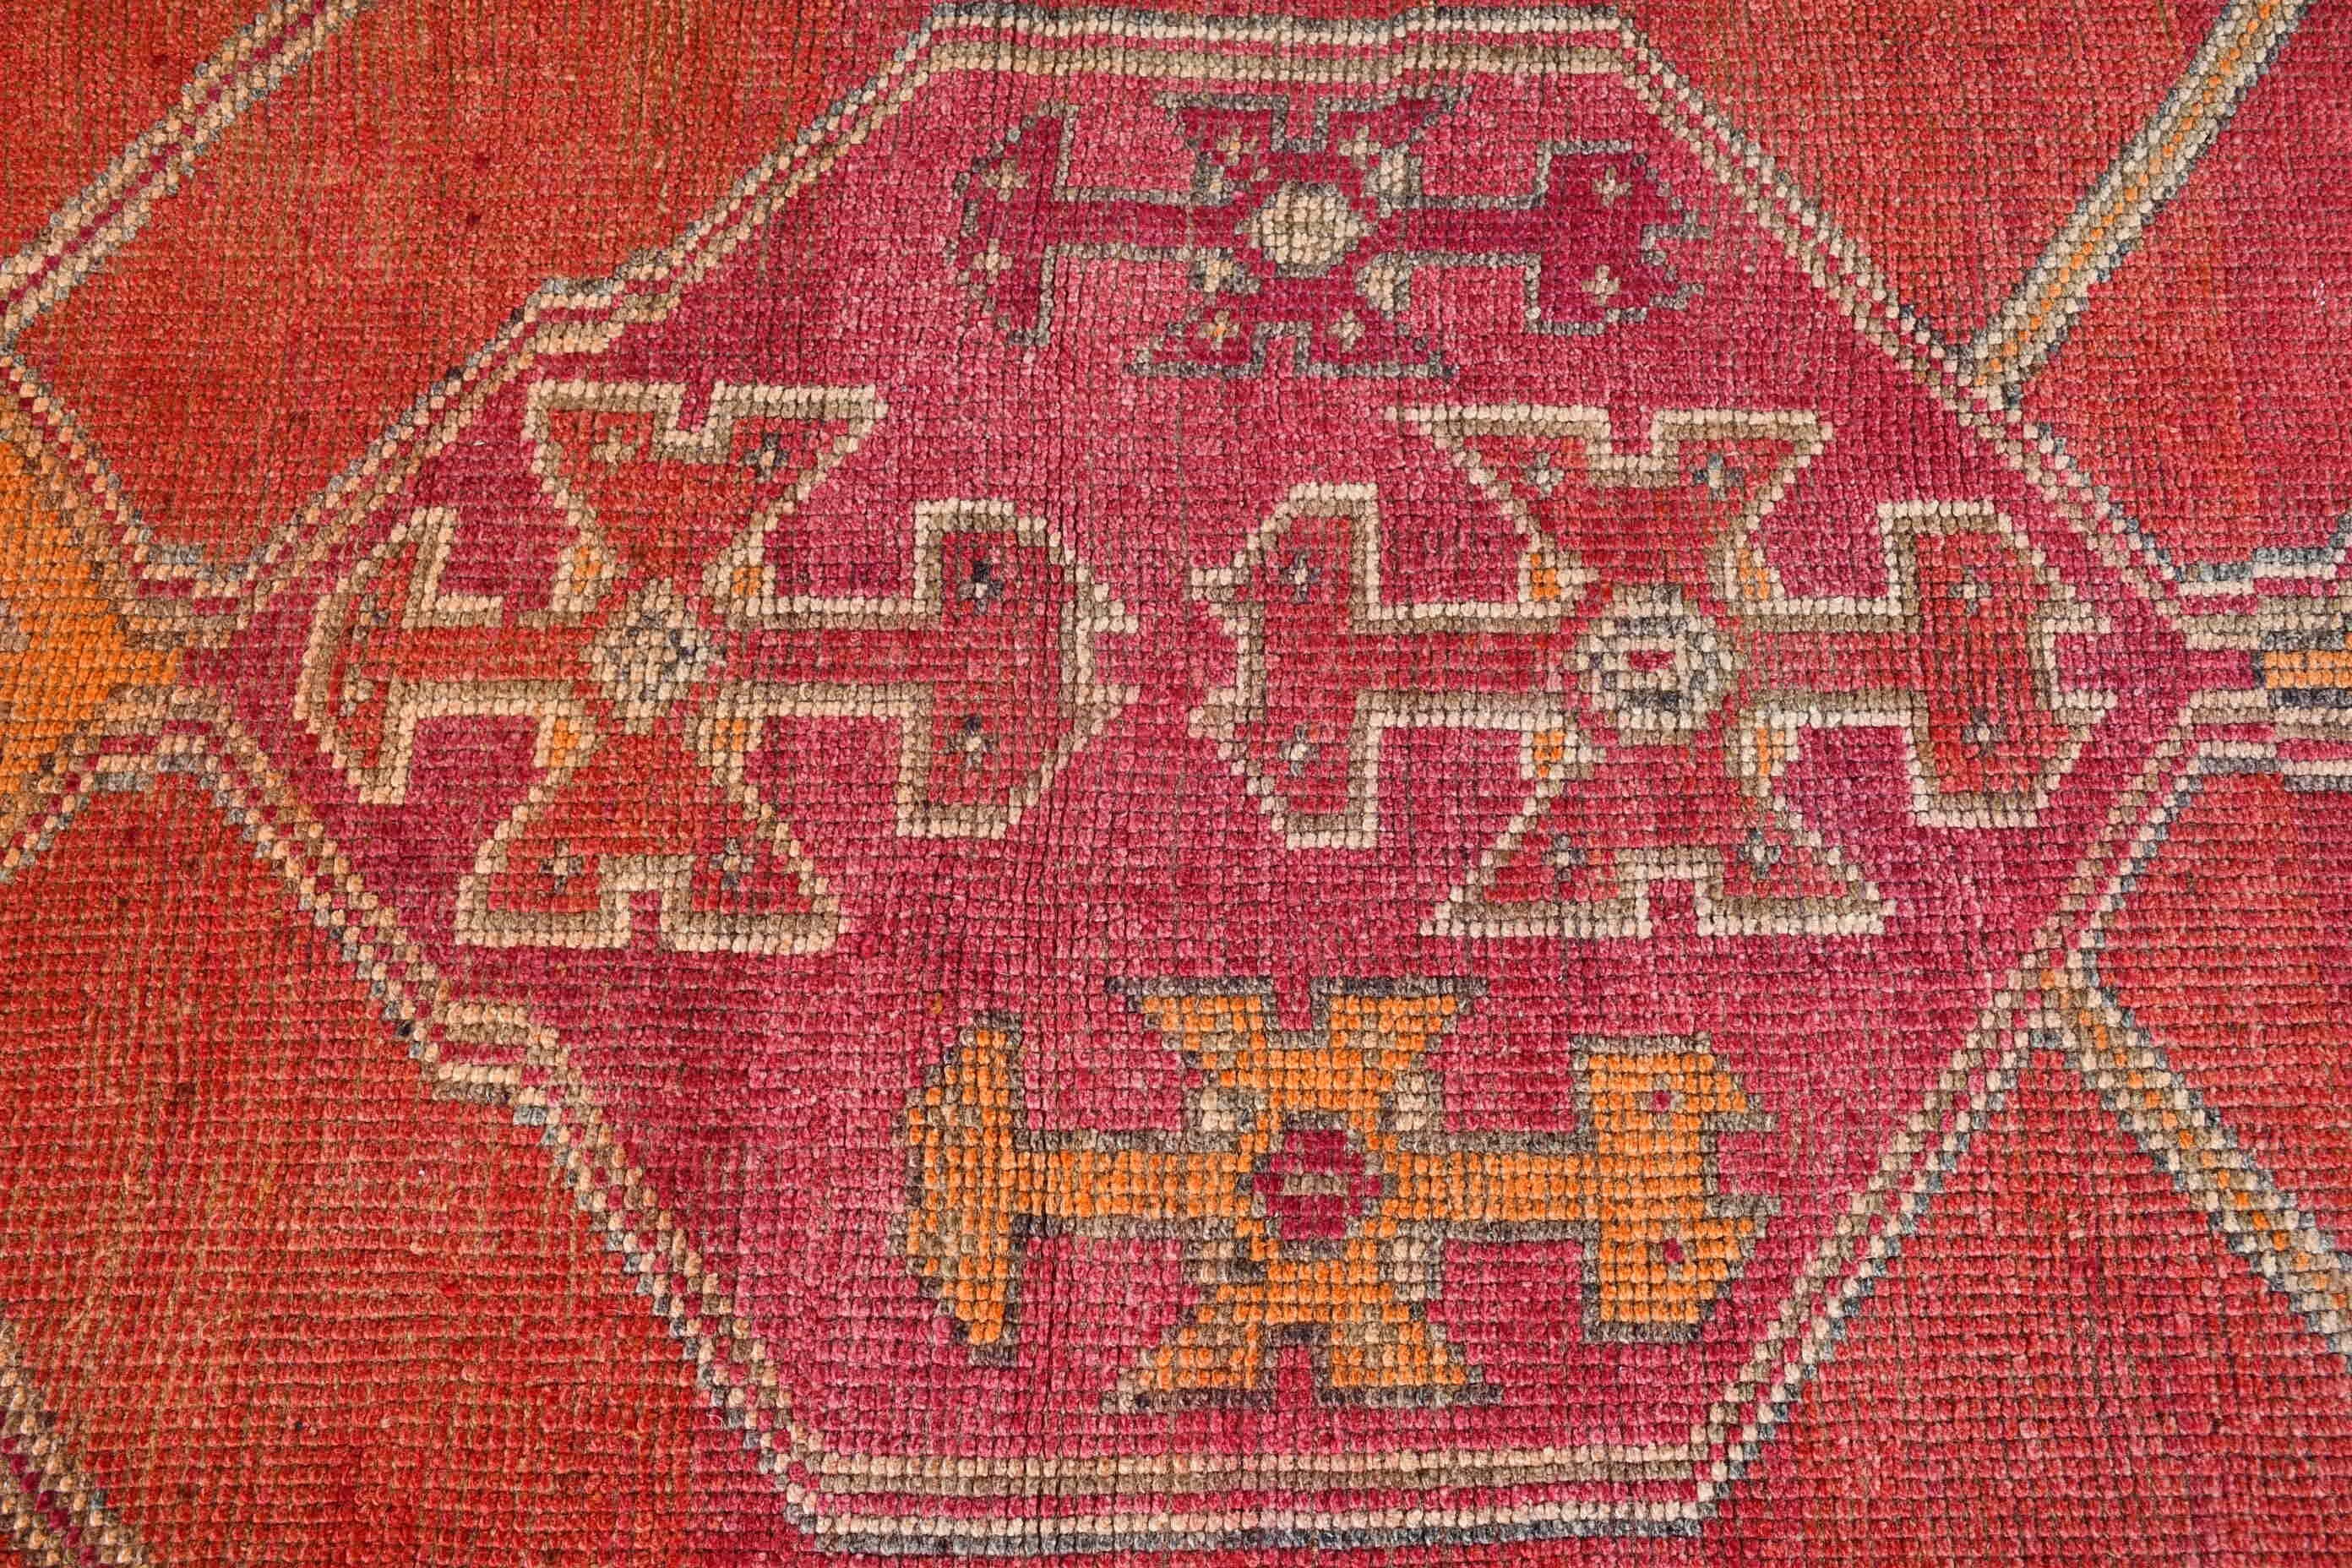 Turkish Rug, Cool Rug, Moroccan Rug, Rugs for Hallway, Pink Home Decor Rug, Floor Rug, Corridor Rugs, 2.7x10.5 ft Runner Rugs, Vintage Rugs